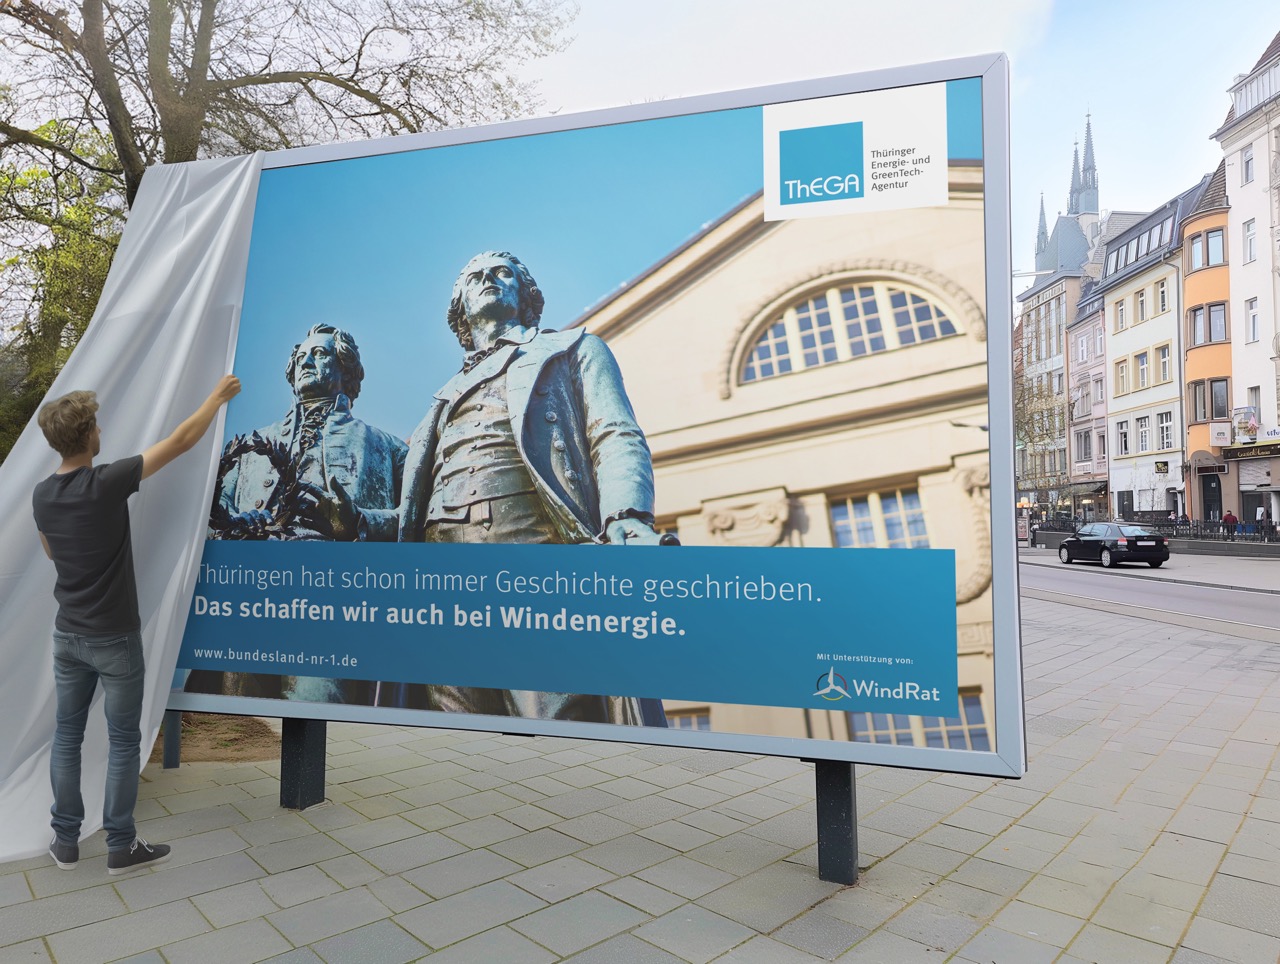 Man sieht einen Mann, der ein Plakat für mehr Windenergie in Thüringen enthüllt.